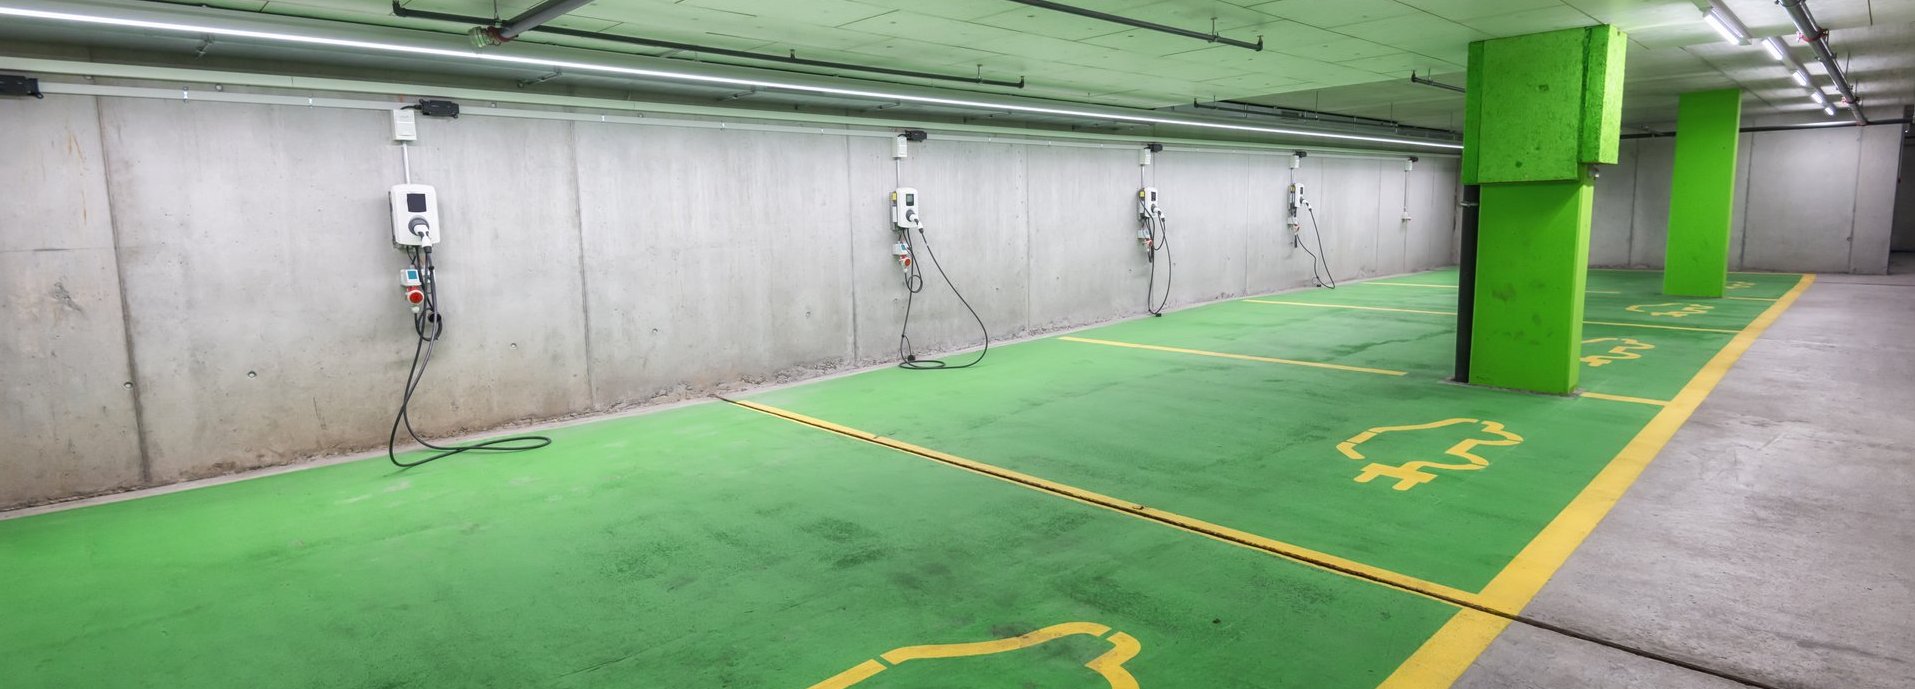 leere Elektro Ladeplätze in einer Tiefgarage mit grünen Markierungen auf dem Boden